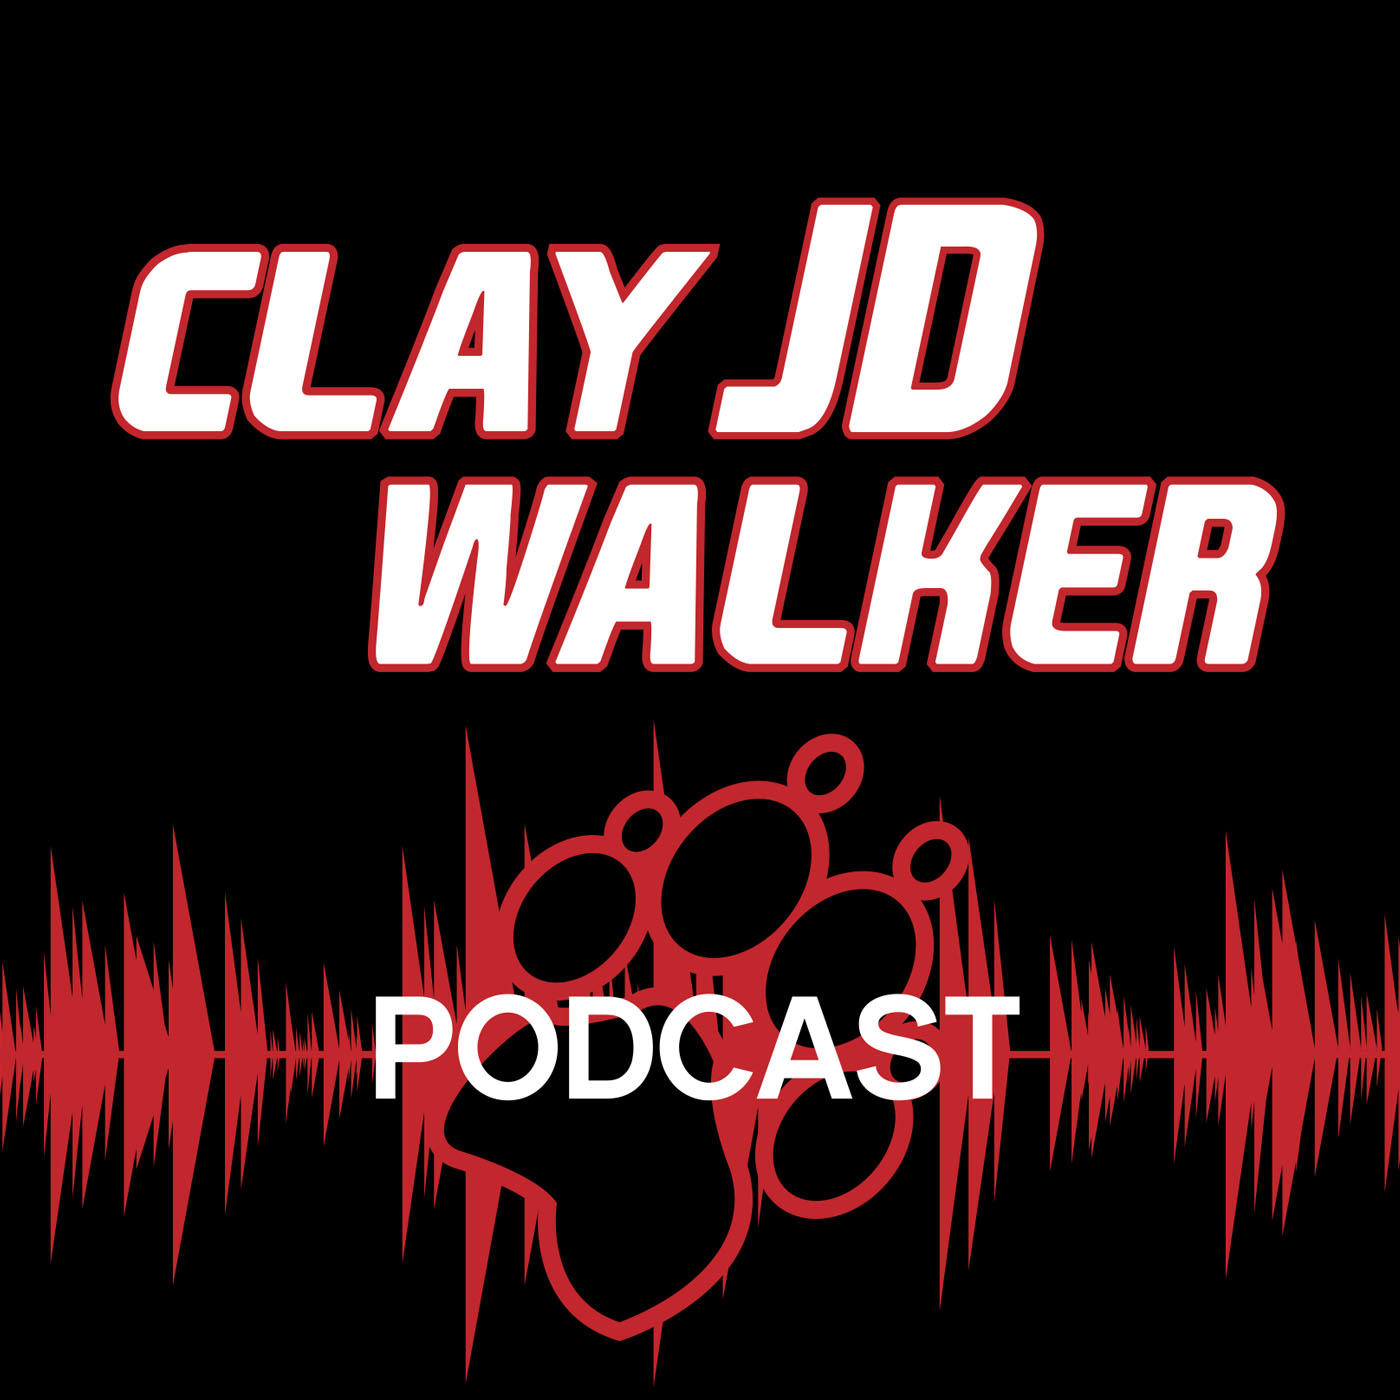 Clay JD Walker